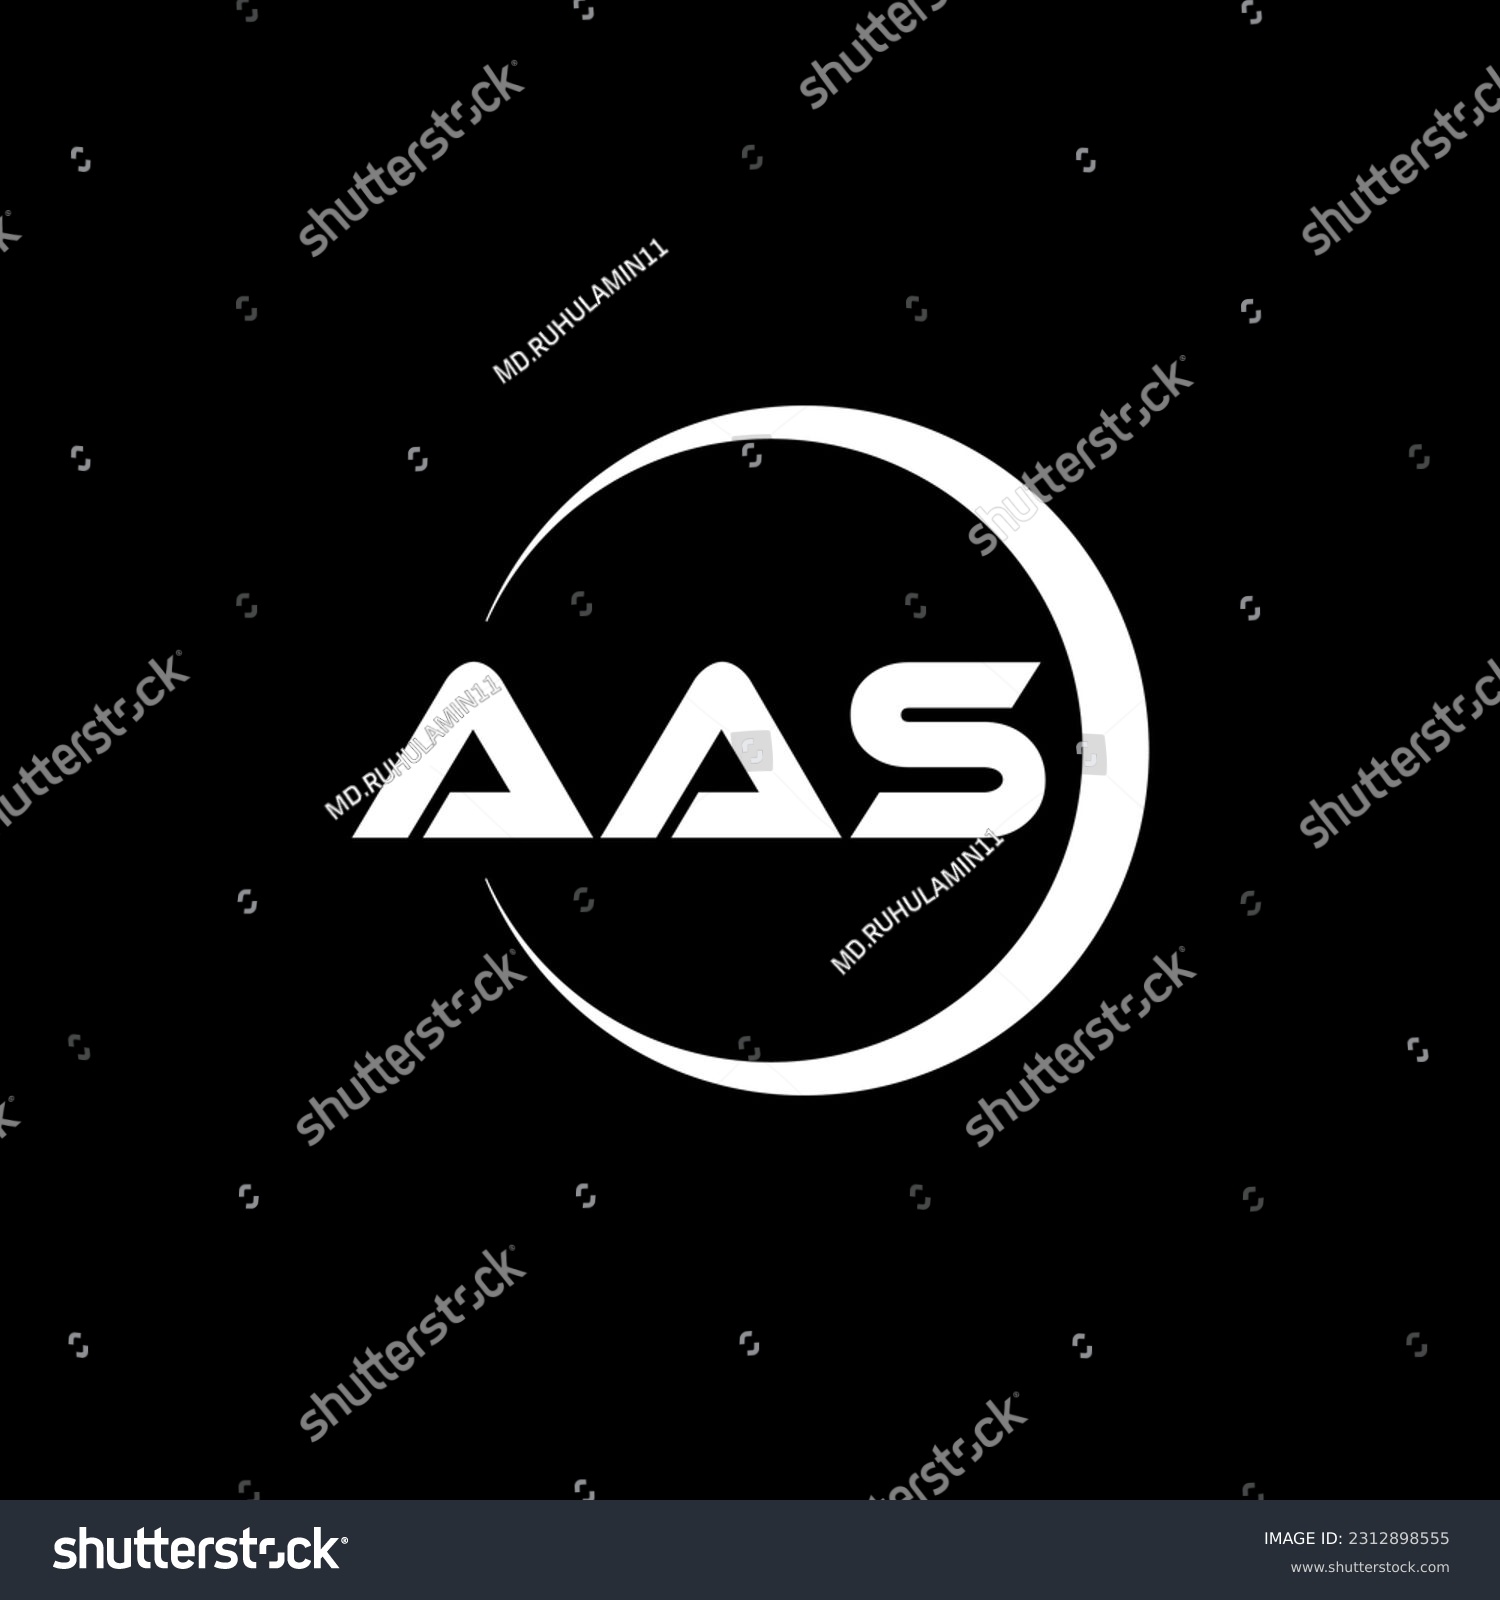 SVG of AAS letter logo design in illustration. Vector logo, calligraphy designs for logo, Poster, Invitation, etc. svg